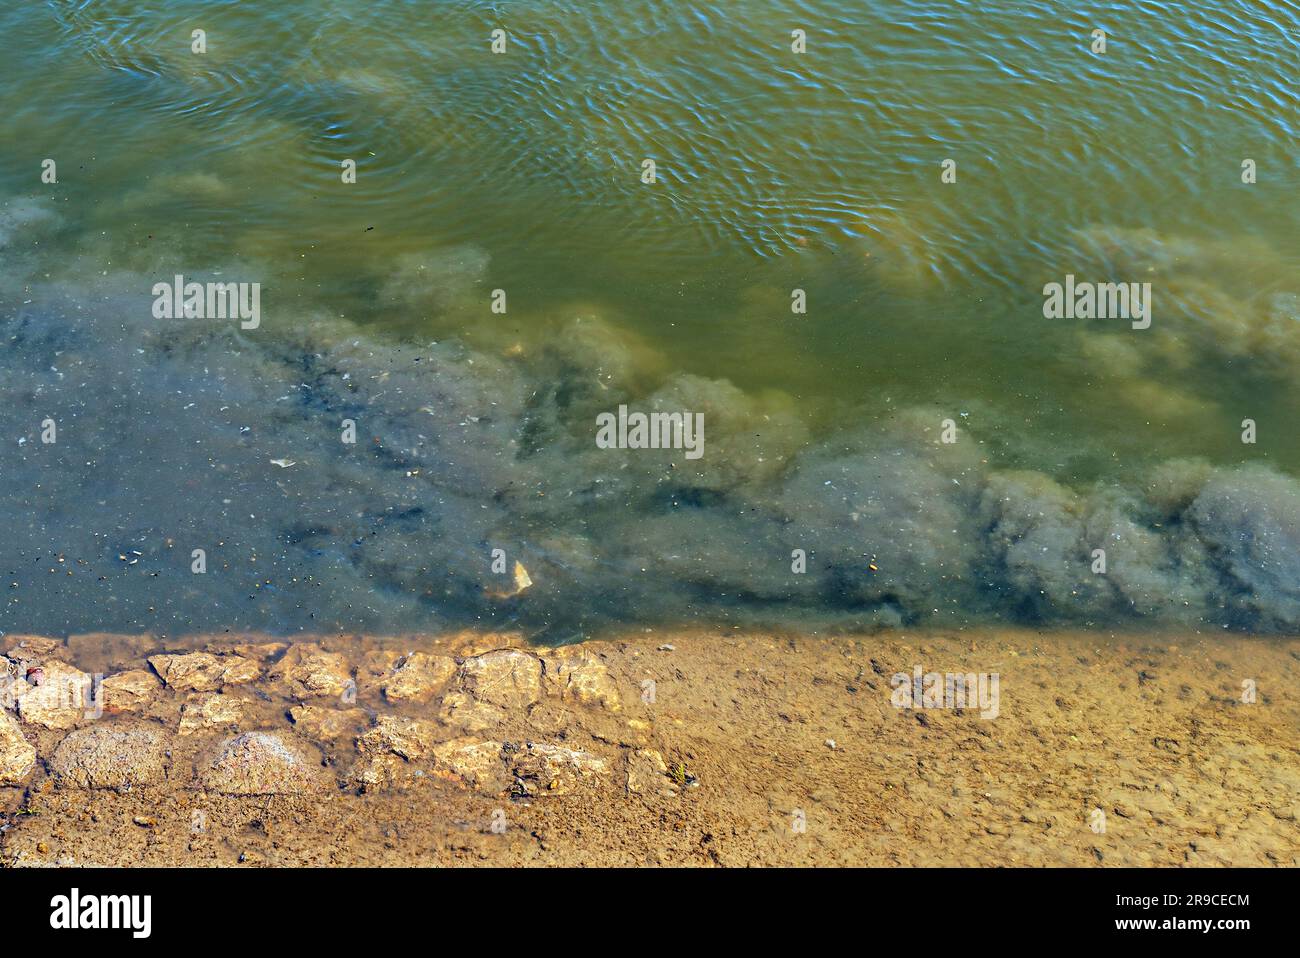 Pollution de l'eau du Danube à Novi Sad. Sortie directe des eaux usées dans la rivière. Mise au point sélective. Banque D'Images